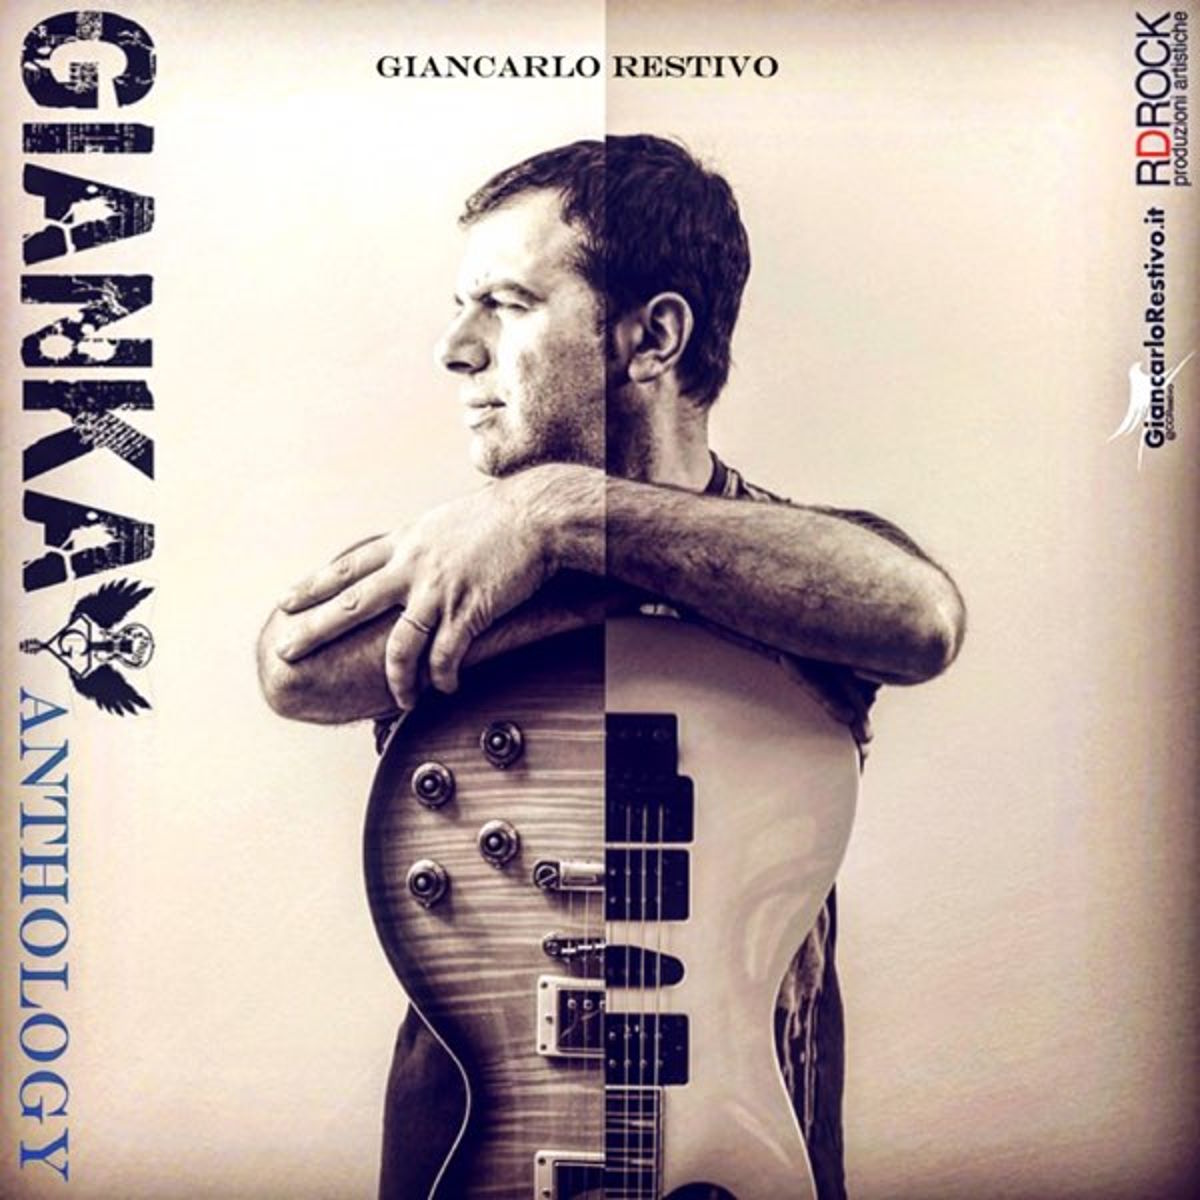 Gianka Anthology compie 5 anni: Un Epos Musicale nella Storia dell'Arte e del Sociale